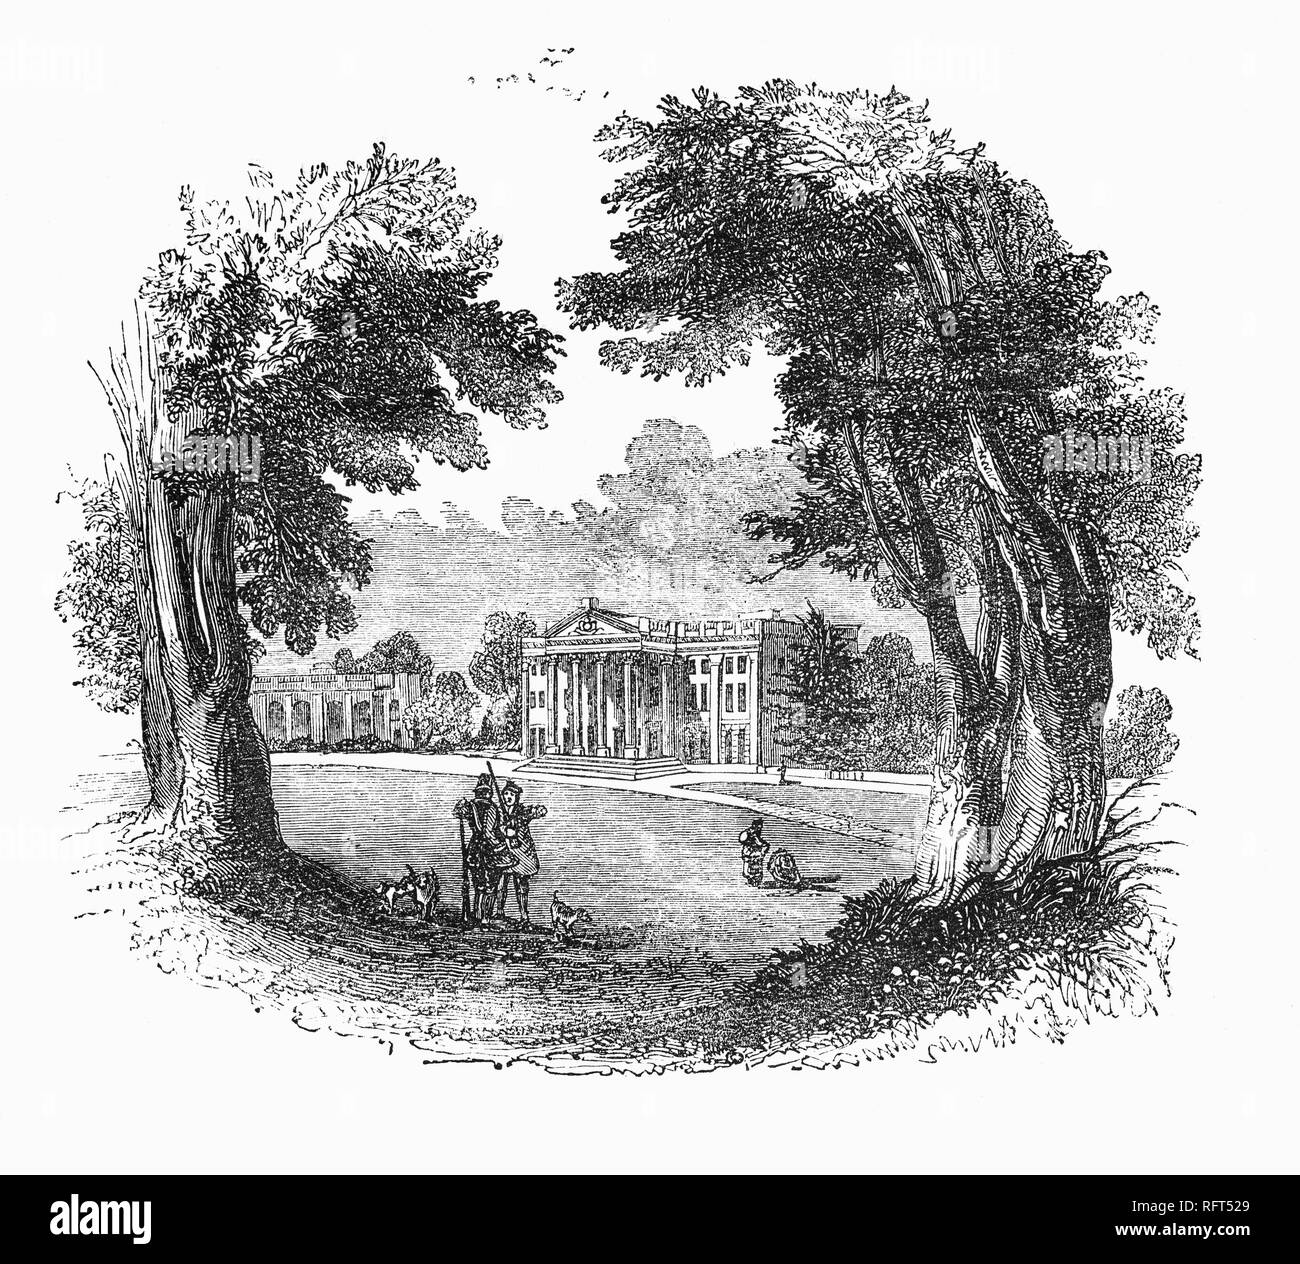 Moor Park est un hôtel particulier de style palladien situé dans plusieurs centaines d'hectares de parc au sud-est de Rickmansworth dans le Hertfordshire, en Angleterre. La maison a été reconstruite en 1678-1679 pour James Scott, premier duc de Monmouth et vendue plus tard à Haskins-Stiles Benjamin, qui avait fait fortune dans la South Sea Company avant l'éclatement de la bulle notoire. Styles la maison de pierre de Portland avec rectifiée et ajouté un grand portique corinthien sur la façade sud. Il a été acheté plus tard par l'Amiral Lord Anson, qui a commandé à Capability Brown de refaire les jardins à balayage en style 'paysage' avec un petit lac. Banque D'Images